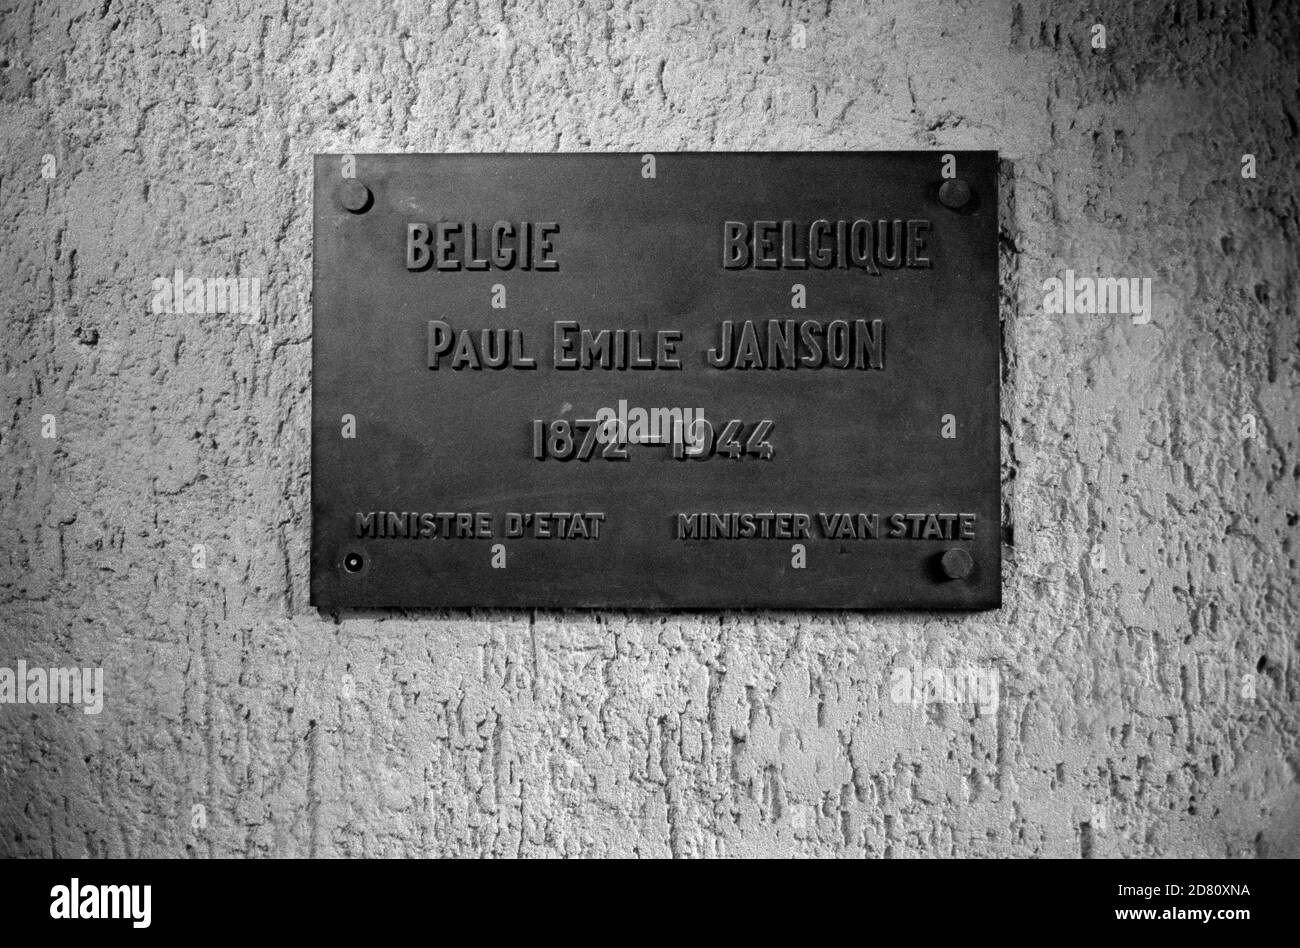 Paul Emile Jansen war 1937–1938 Premierminister von Belgien. Zu Beginn des Zweiten Weltkriegs diente Janson als Außenminister und als Minister mit Ressort in der Regierung von Hubert Pierlot. Er blieb in Frankreich, als die Regierung im Exil nach London zog. 1943 wurde er von den deutschen Besatzungstruppen festgenommen und im KZ Buchenwald inhaftiert. Dort starb er 1944. Die Gedenktafel befindet sich im Lagerkrematorium Buchenwald, einem Konzentrationslager der Nazis, das im Juli auf dem Ettersberg bei Weimar errichtet wurde Stockfoto